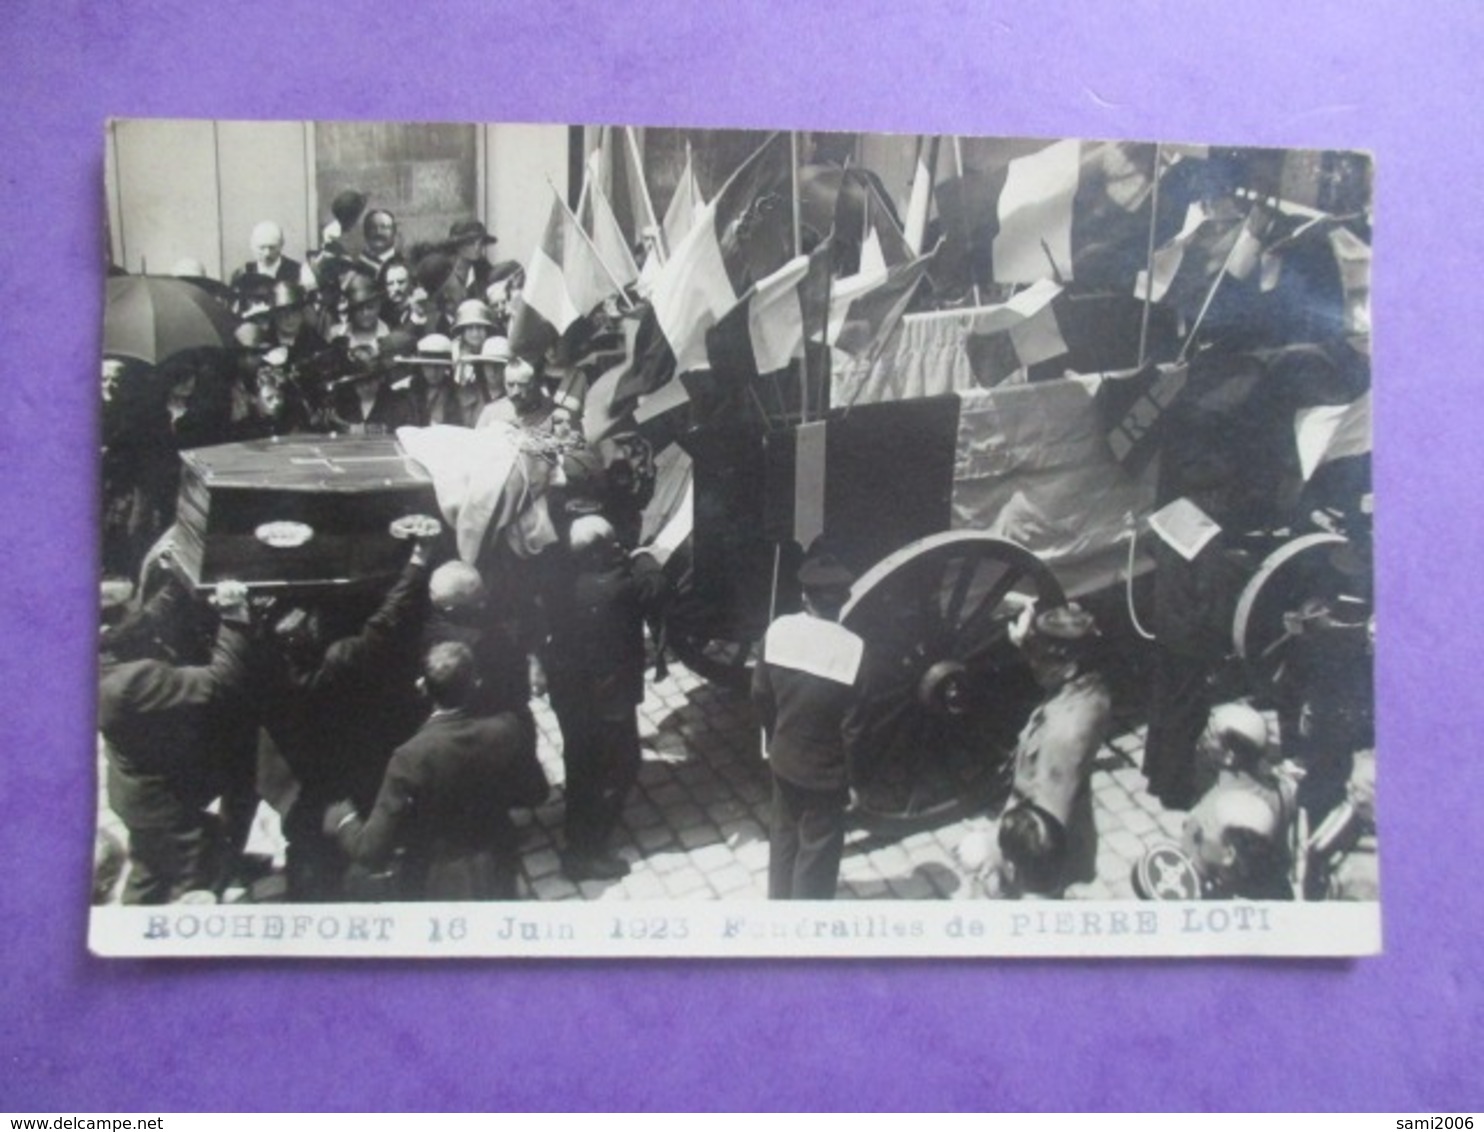 CPA PHOTO ? 17 ROCHEFORT 16 JUIN 1923 FUNERAILLES DE PIERRE LOTI - Funérailles